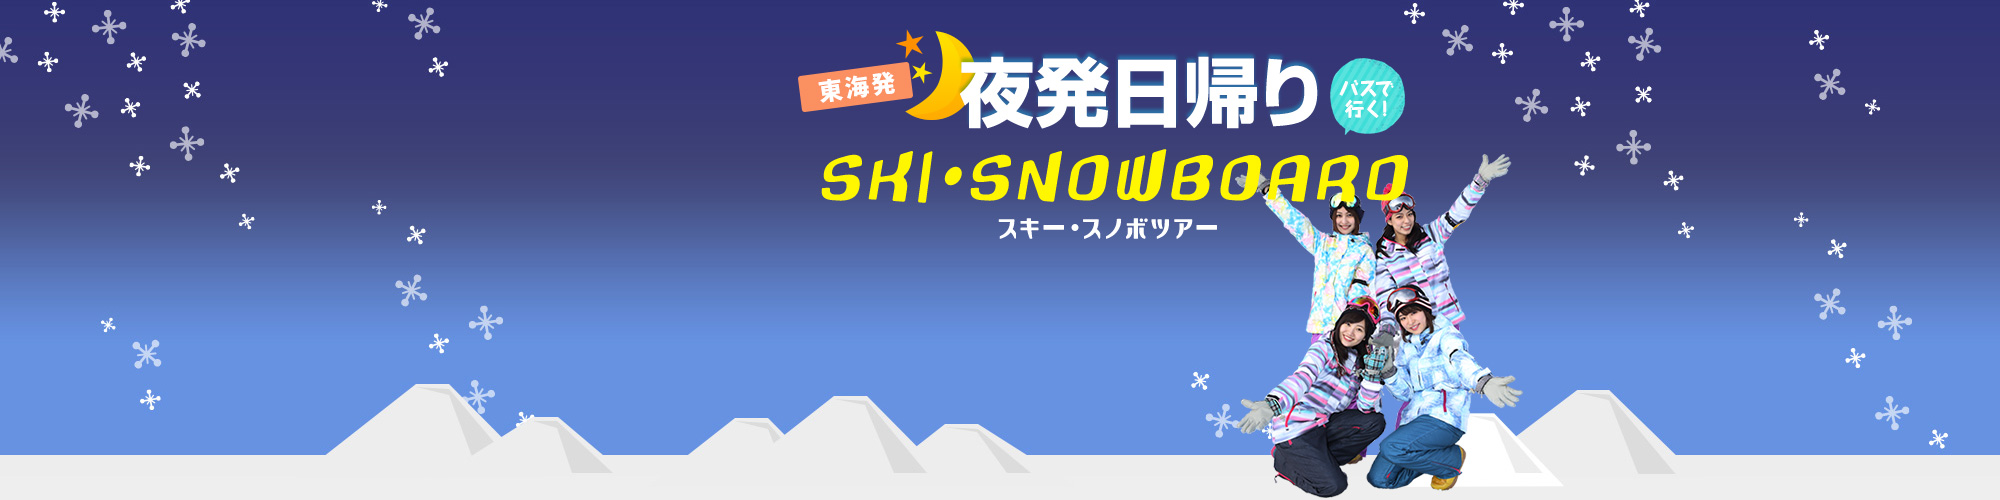 名古屋発日帰りバスで行くスキー・スノボツアー。往復バス+リフト券付きでお得なプランです。